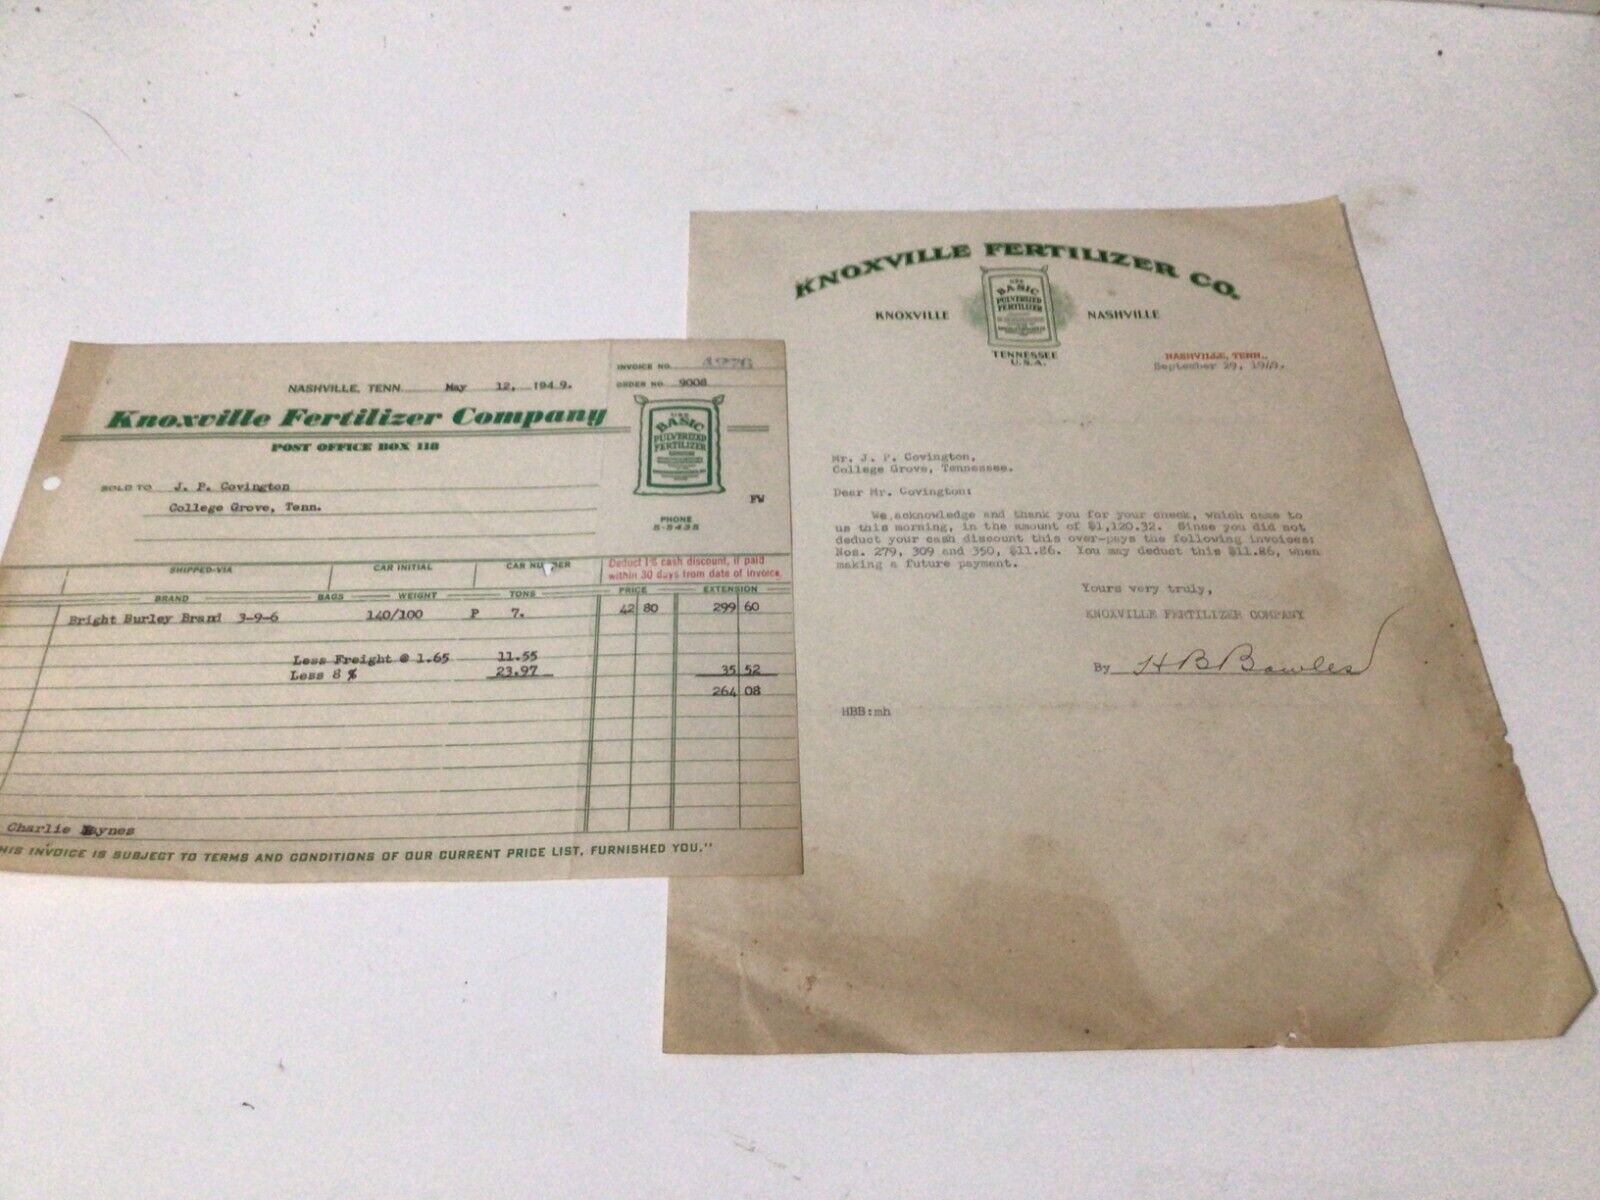 Knoxville Fertilizer Co. Letterhead & Invoice, Nashville, Tenn. 1949 Agriculture